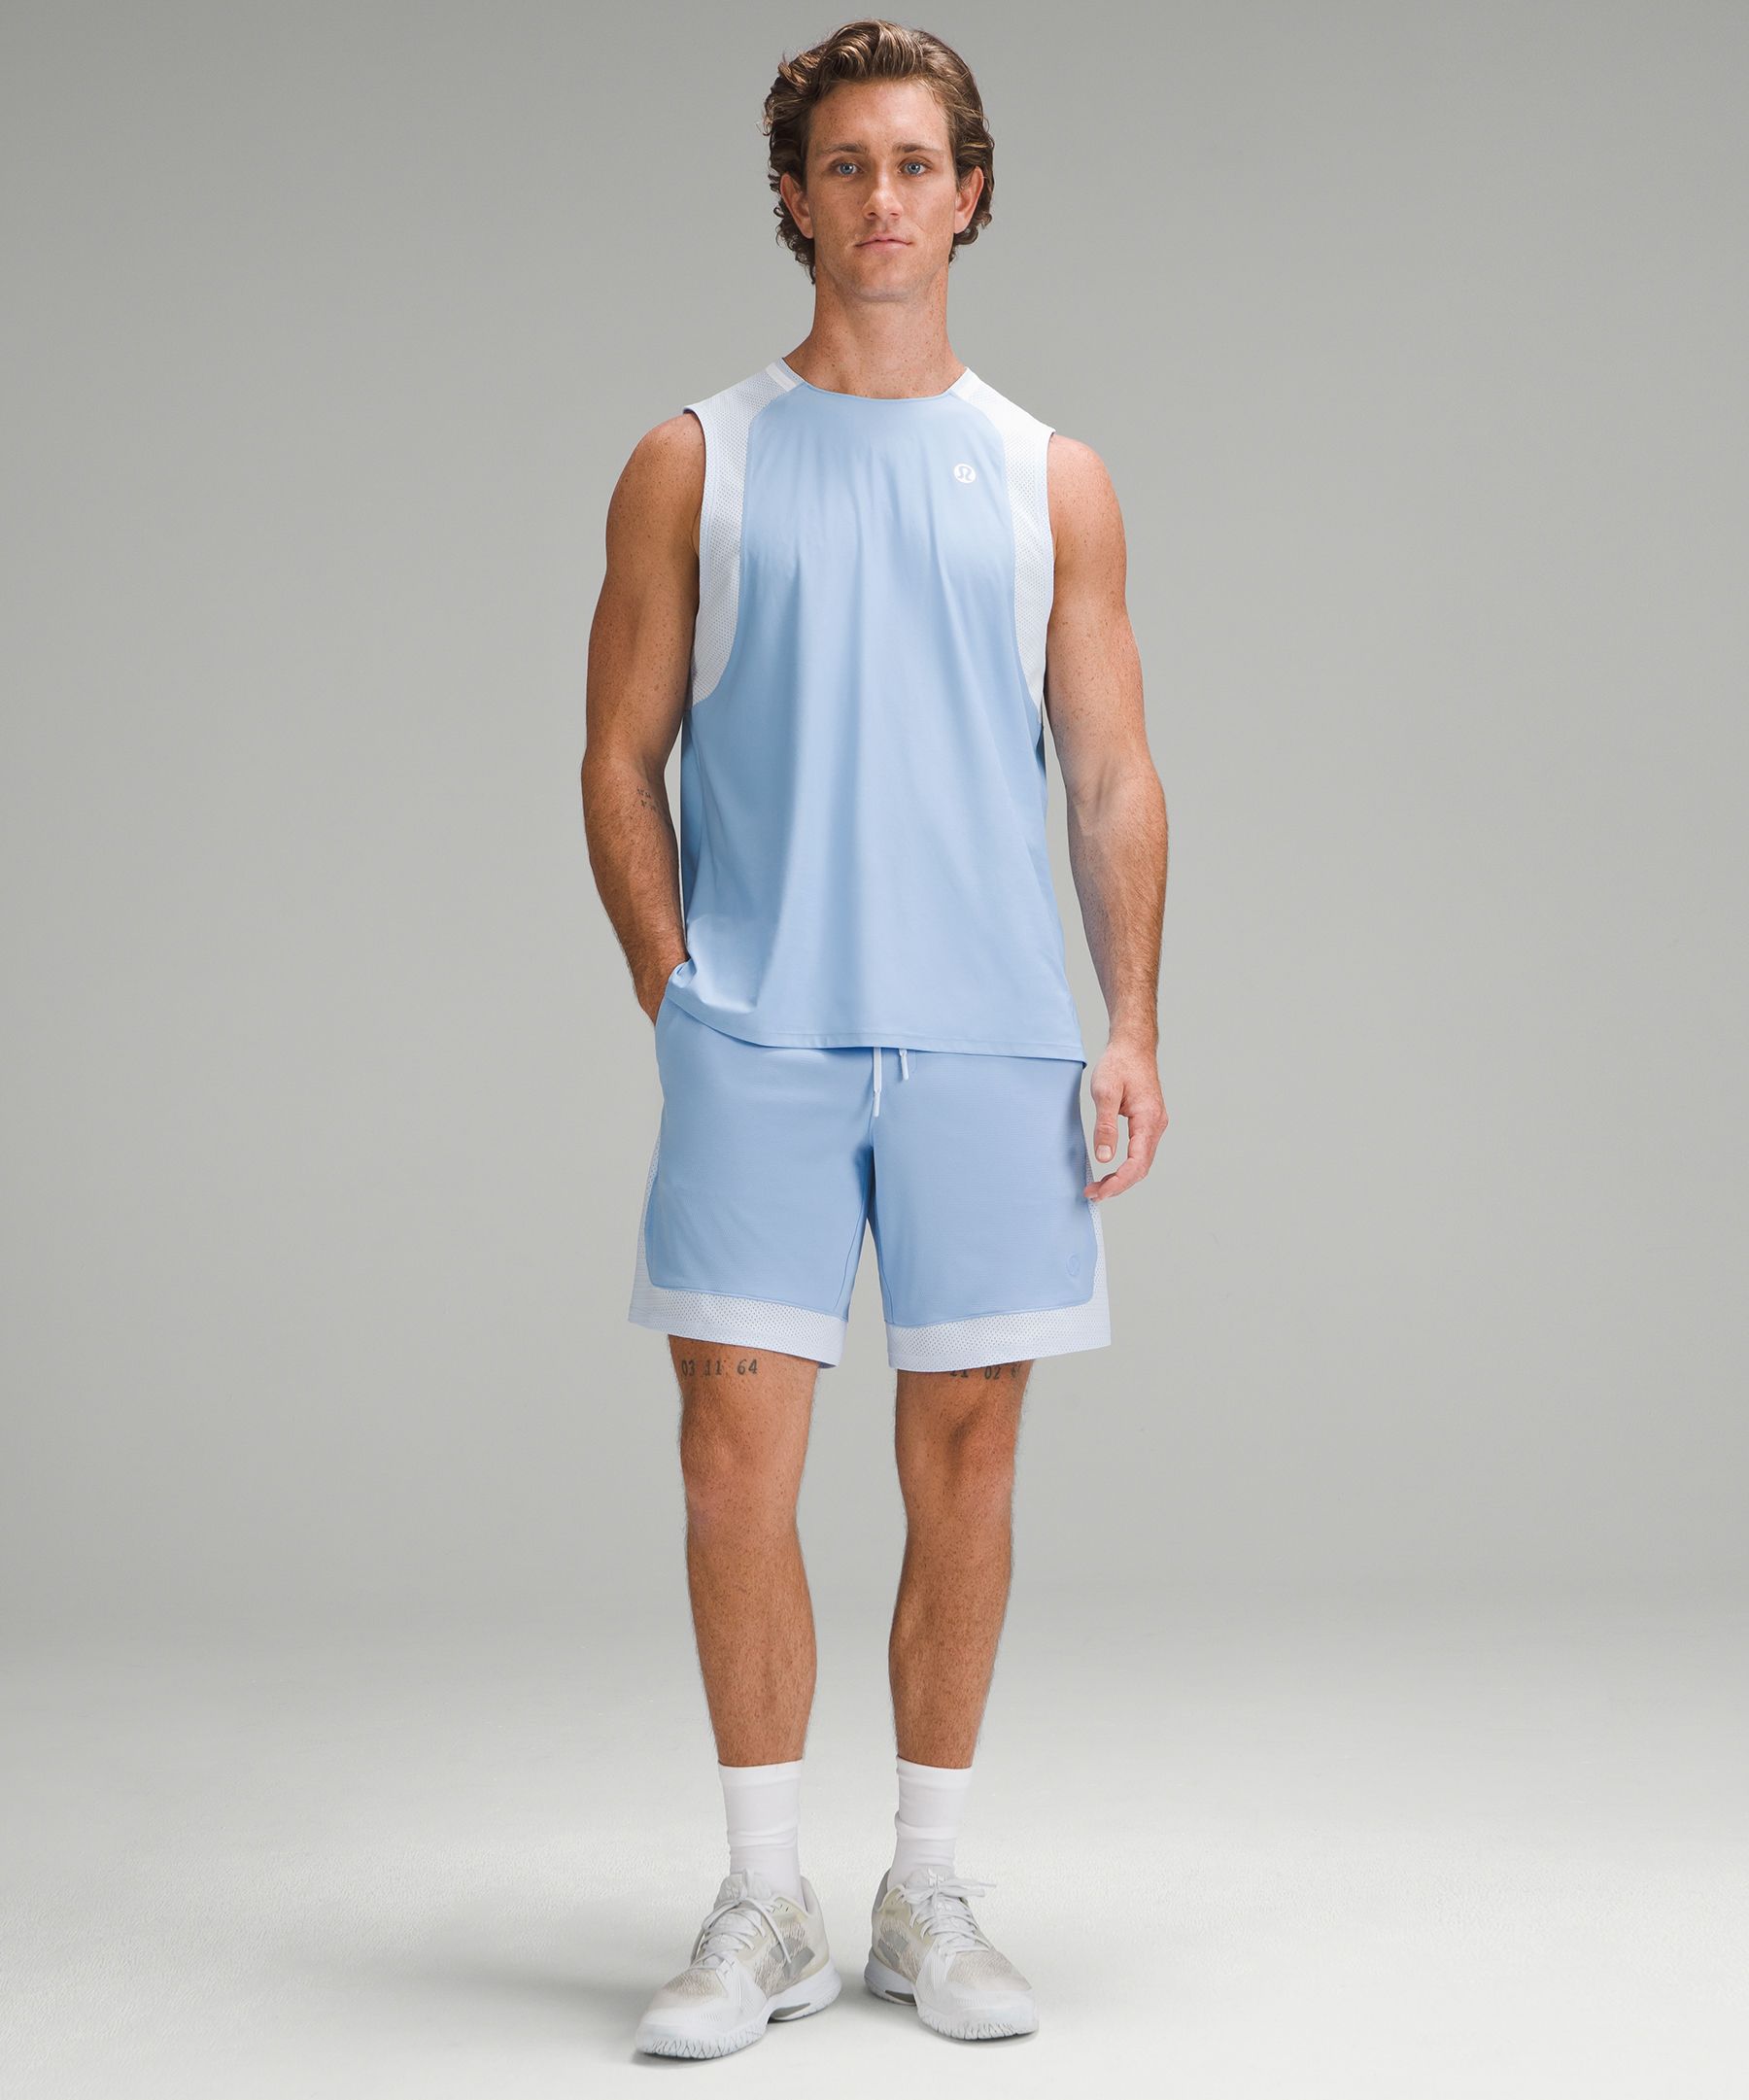 Tennis Sleeveless Shirt | Men's & Tank Tops